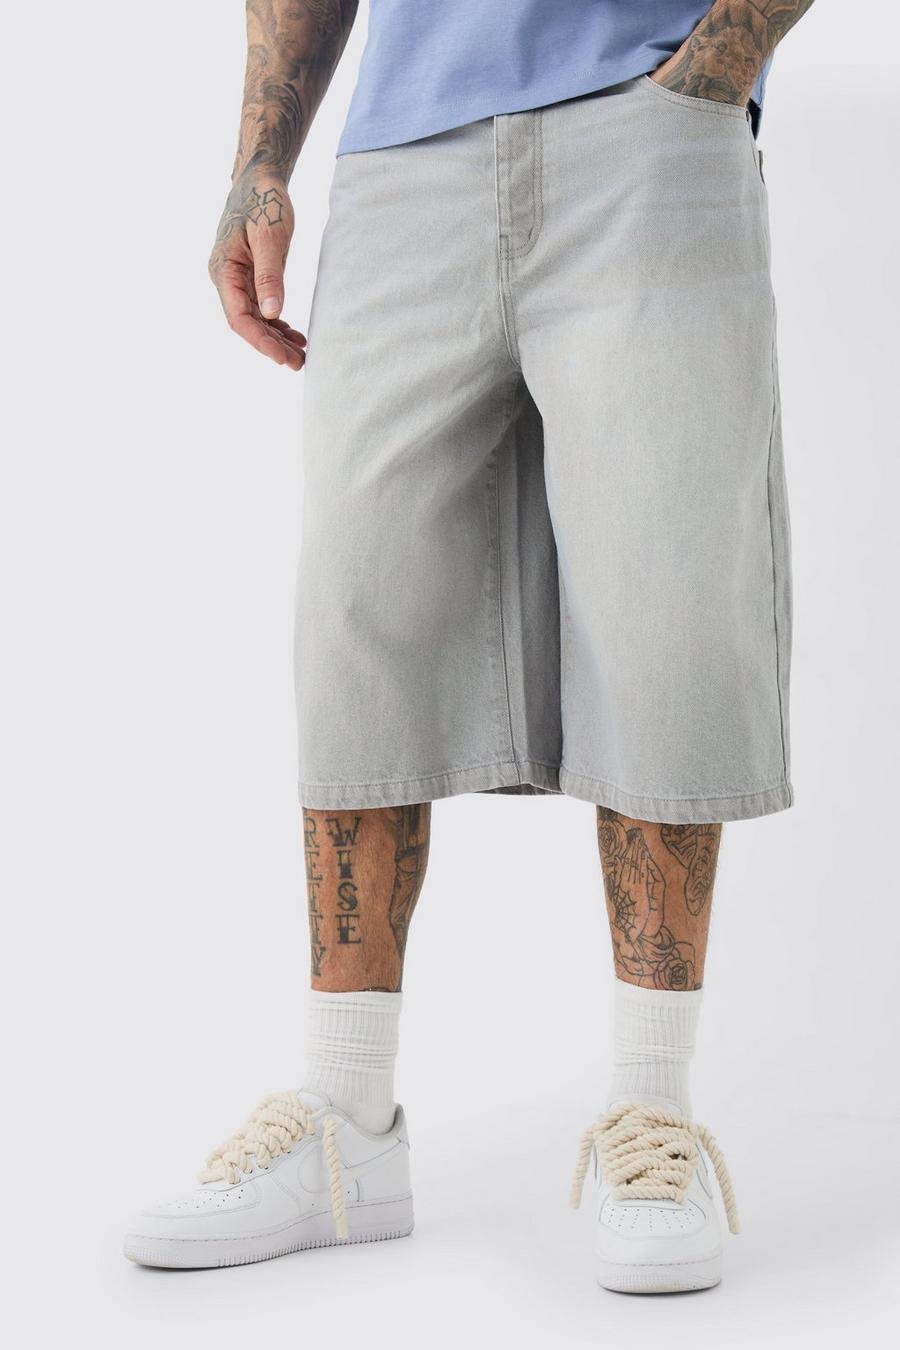 Grey Tall Långa jeansbyxor i grå tvätt